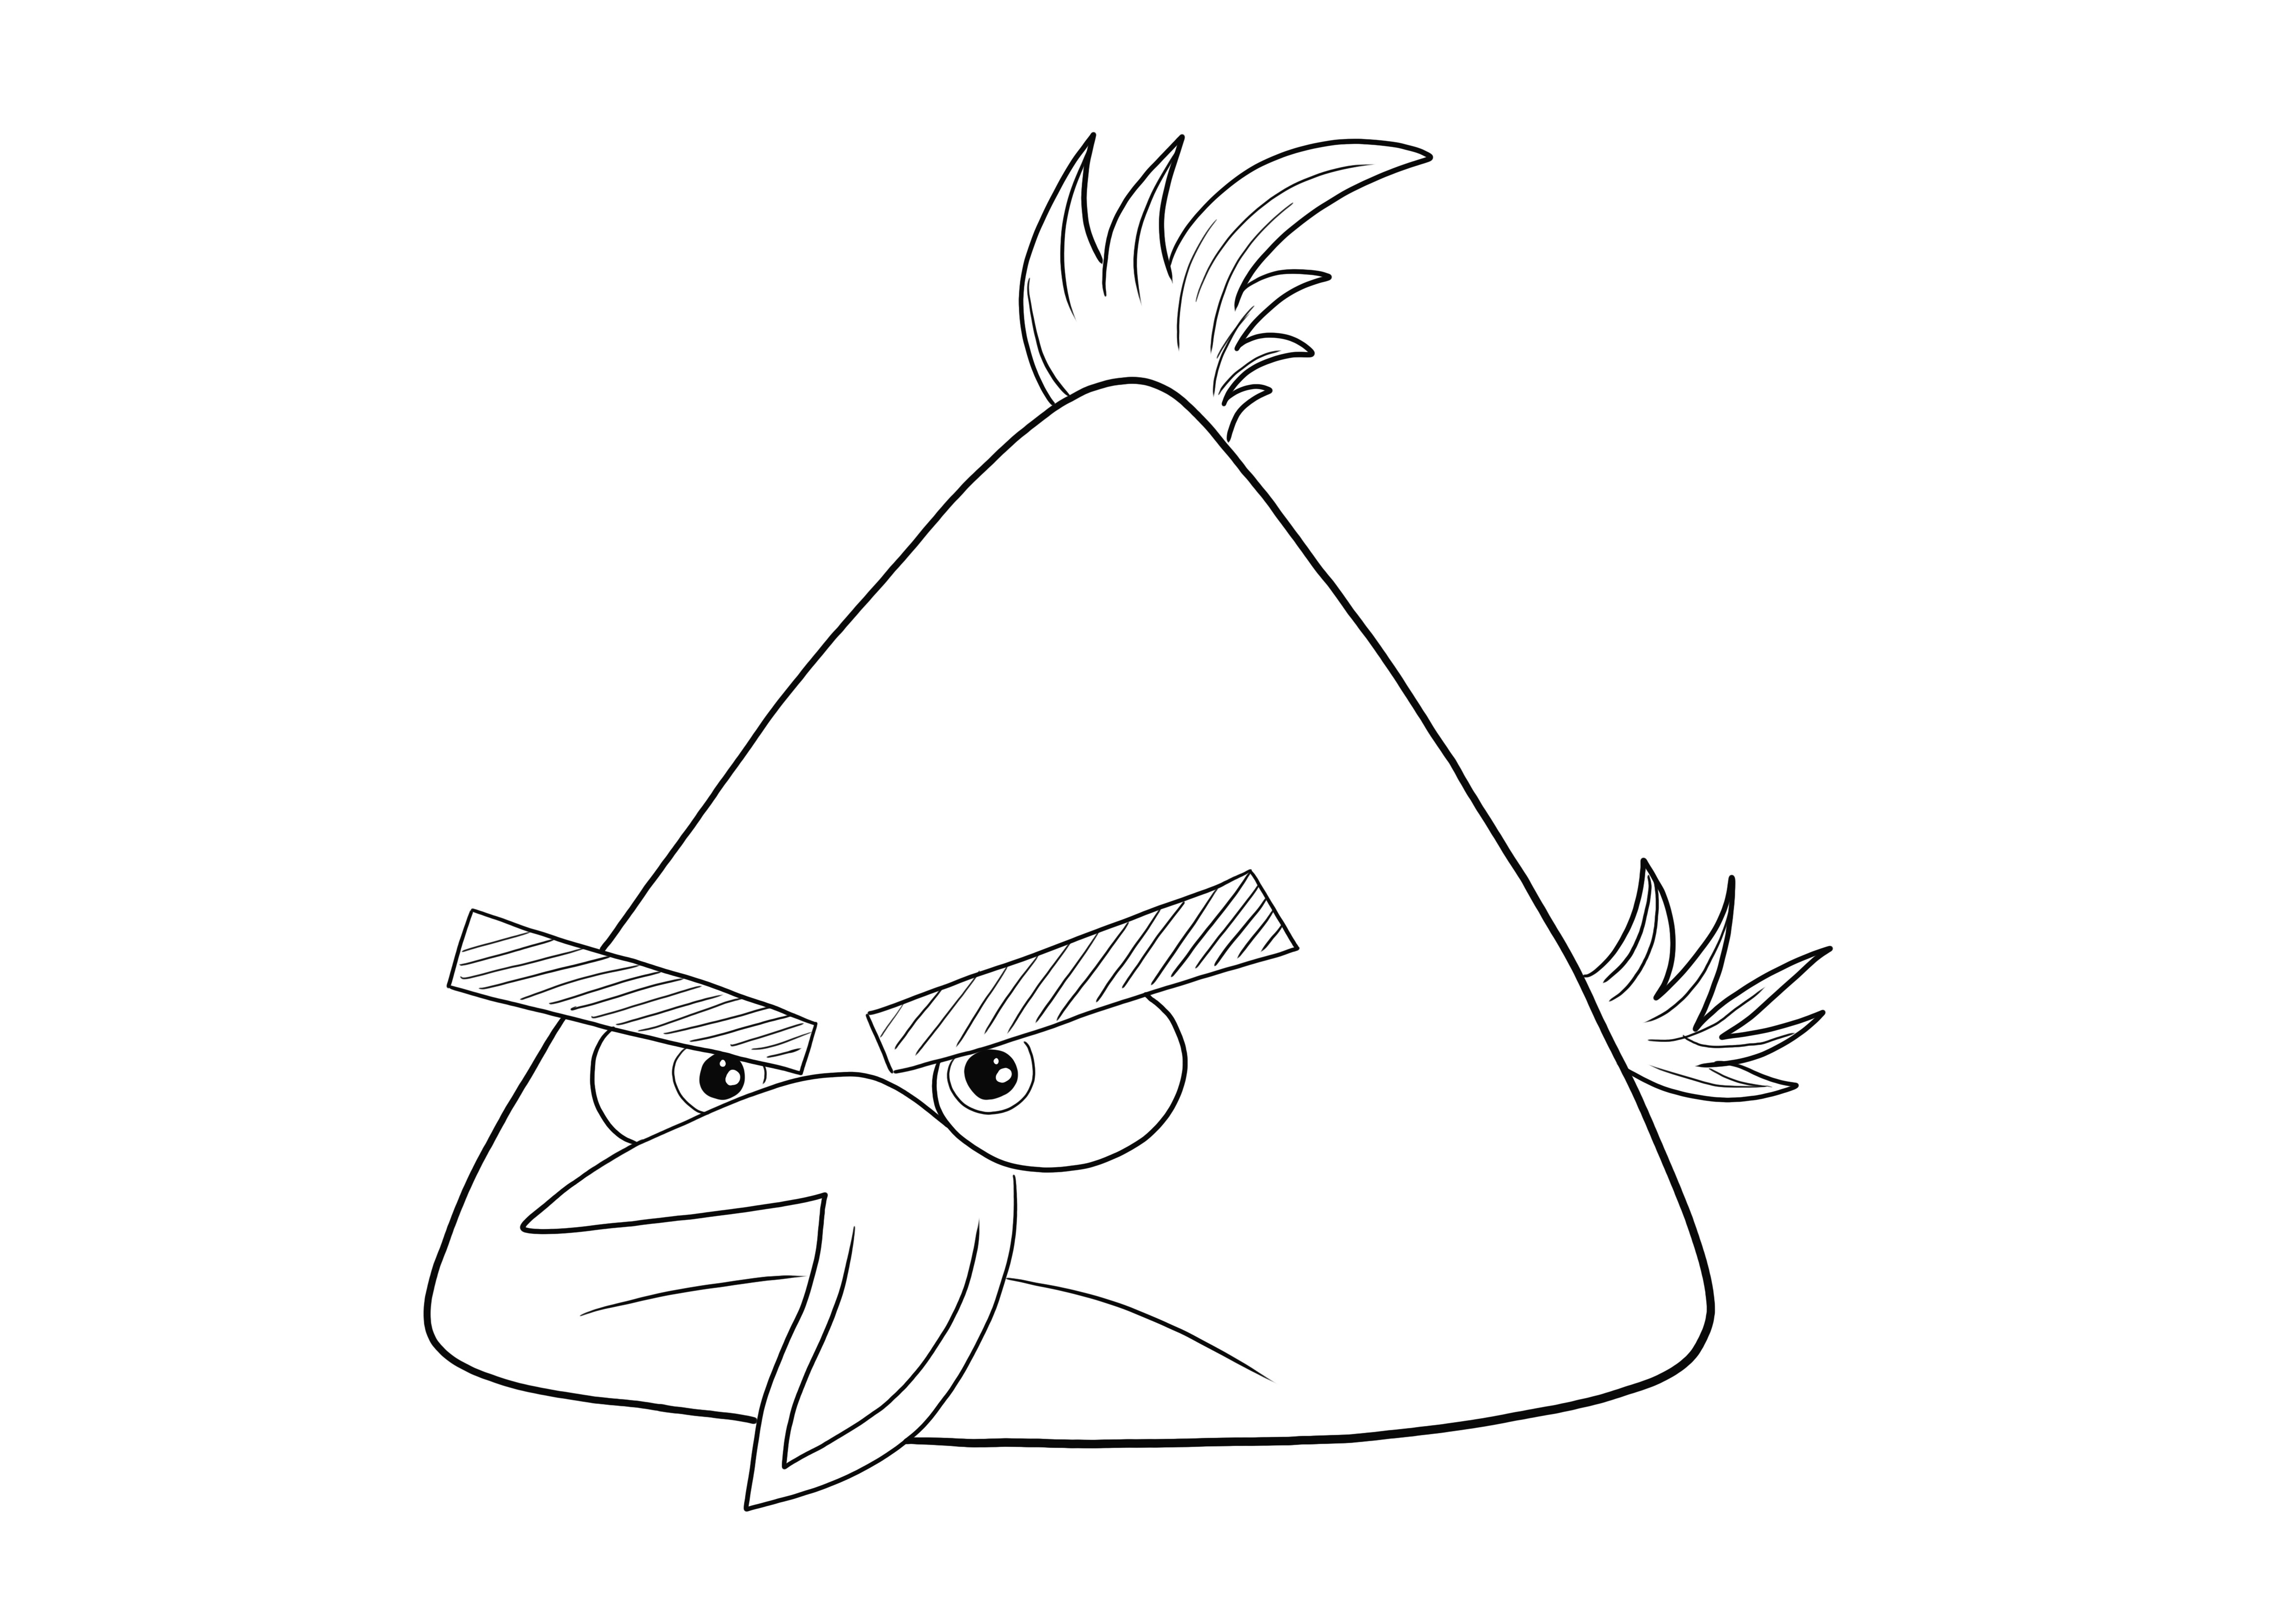 Chuck the Yellow Bird aus dem Cartoon Angry Birds zum kostenlosen Ausdrucken und Ausmalen